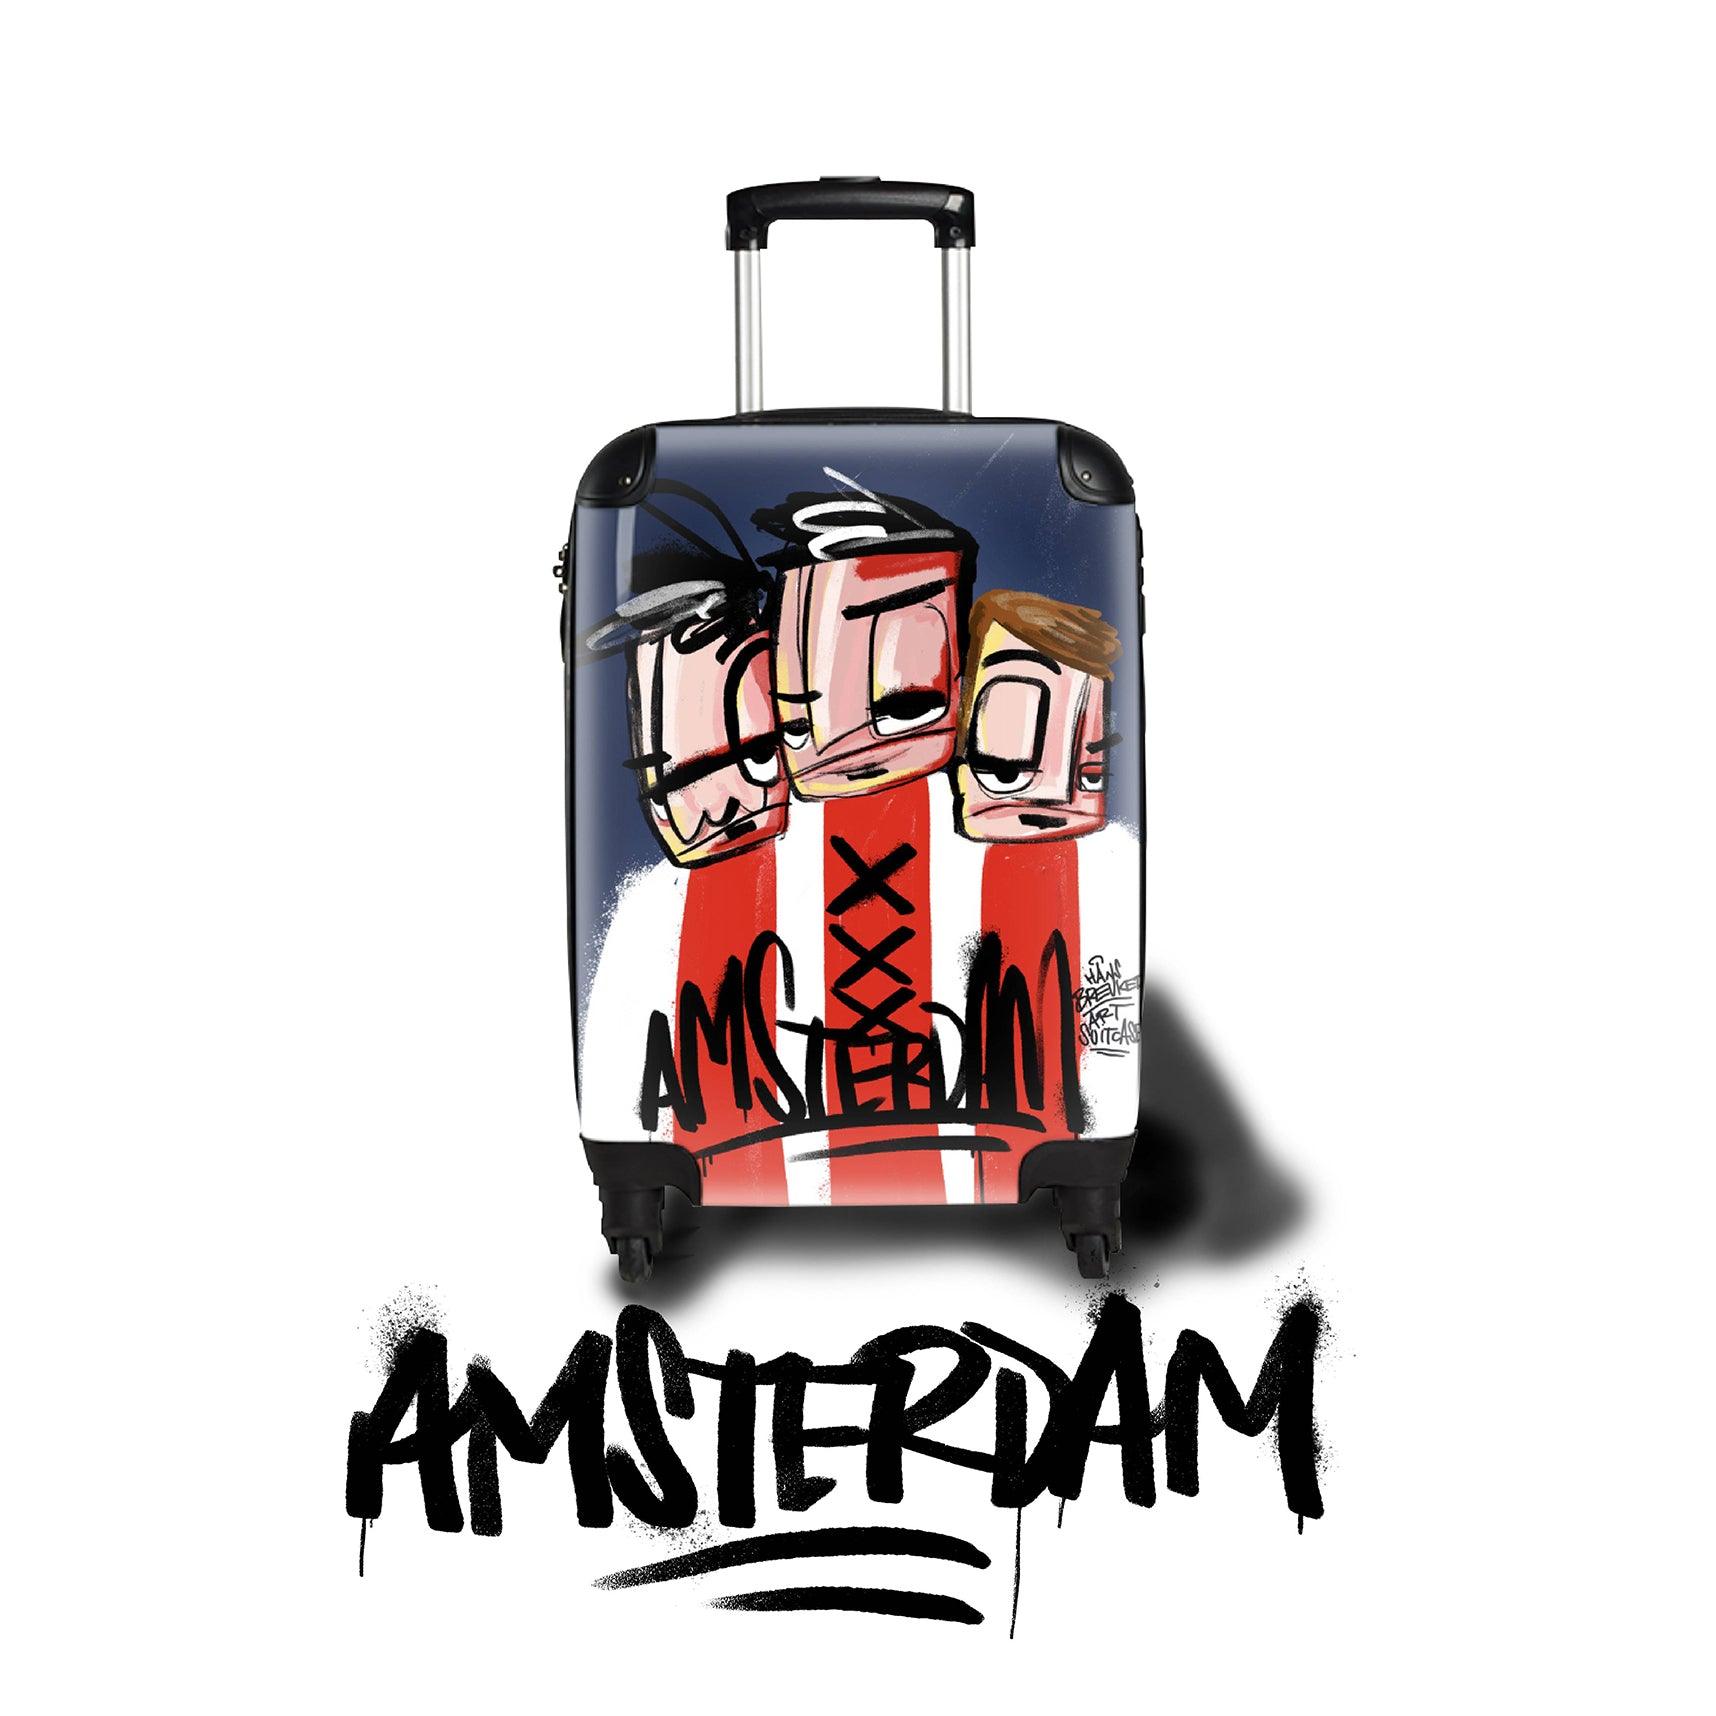 Amsterdam travel. Ajax art koffer - Hans Breuker